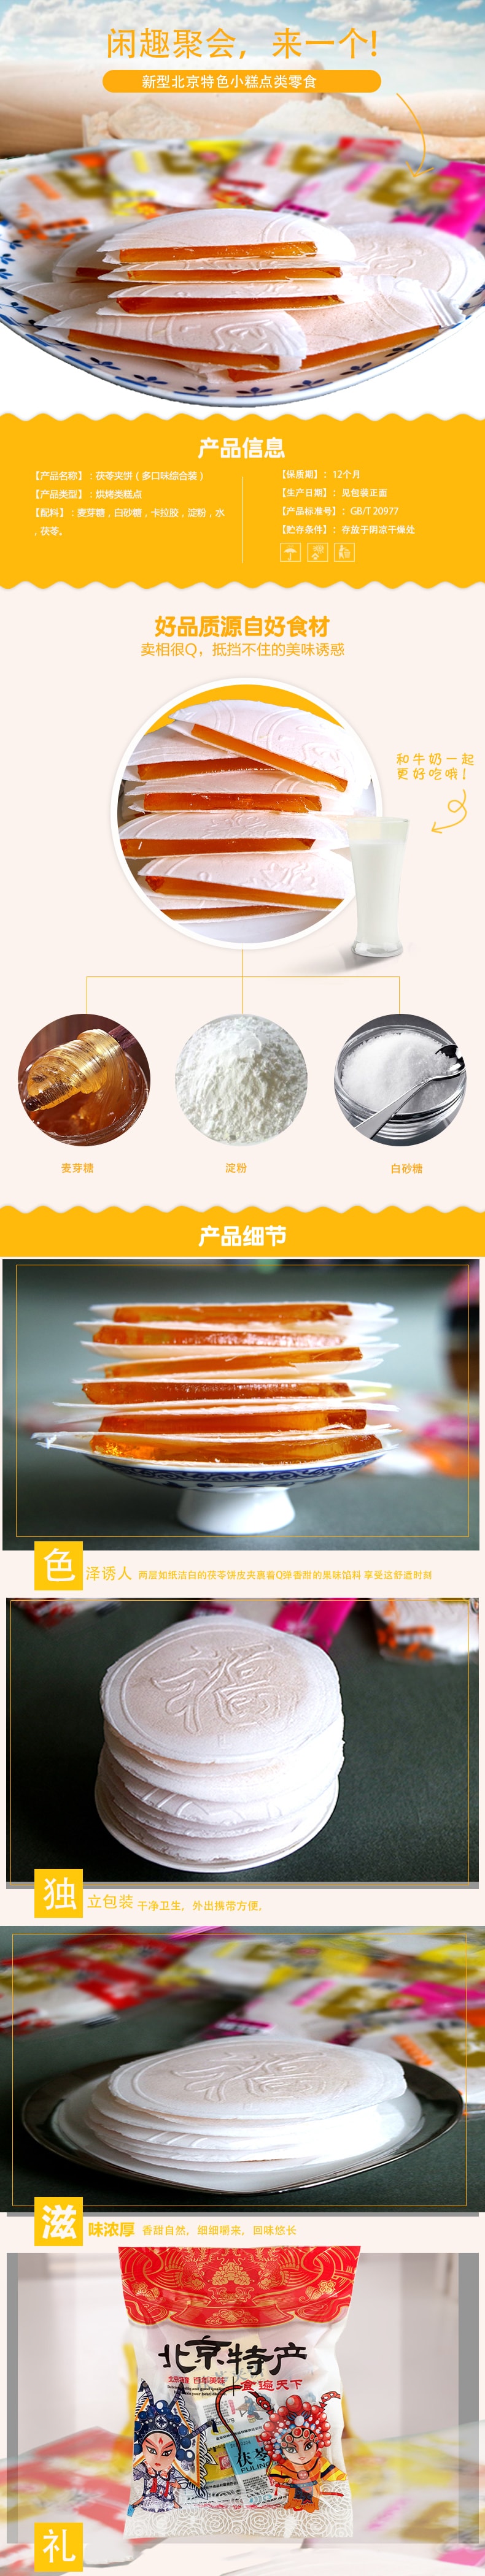 禦食府 茯苓餅混合水果口味北京特產蜜餞糕點零食大包分享家庭裝 5​​00g